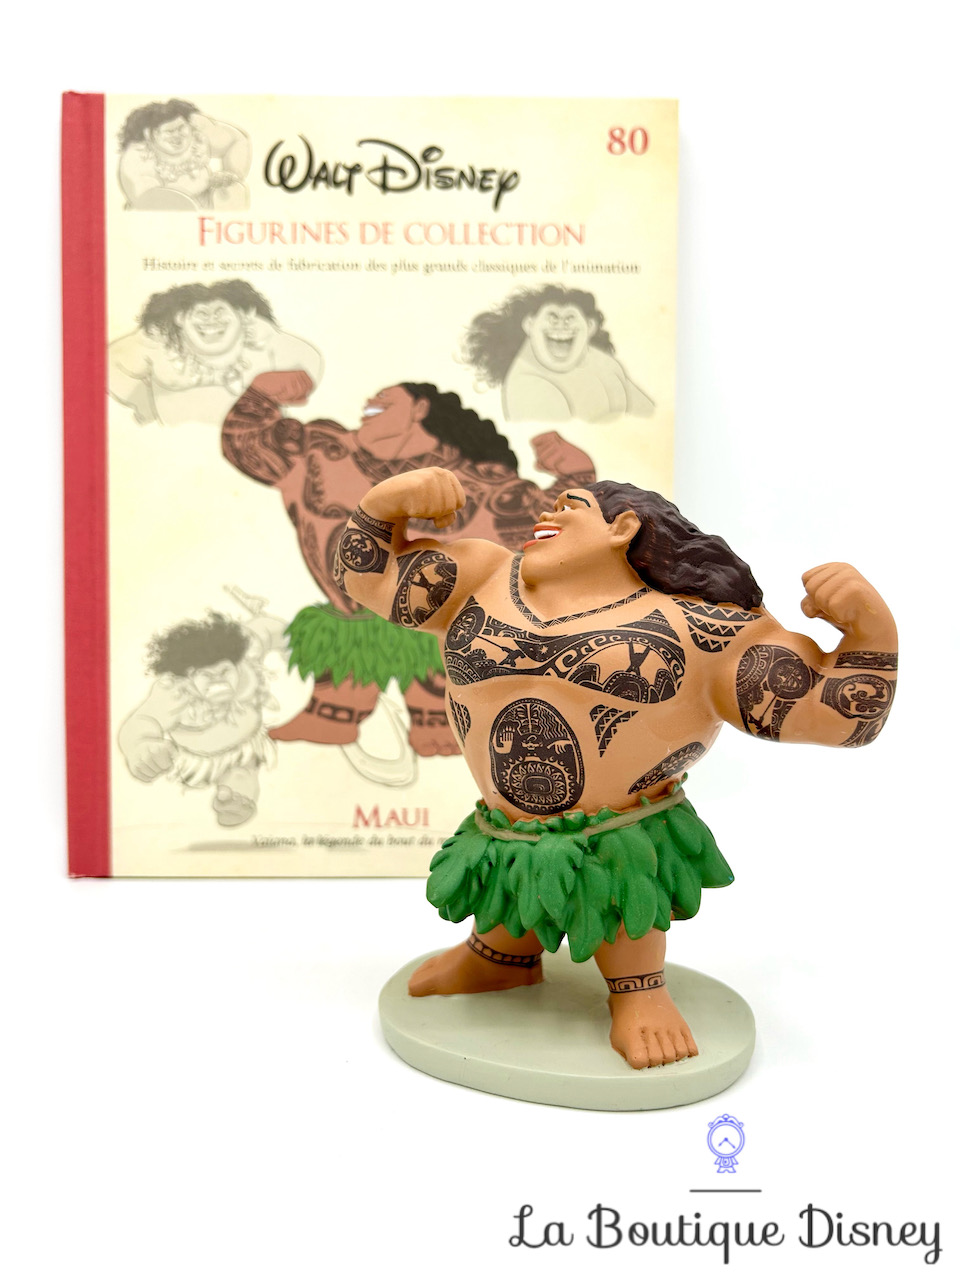 Livre Figurines de collection Maui Disney Hachette 80 Encyclopédie résine Vaiana La légende du bout du monde